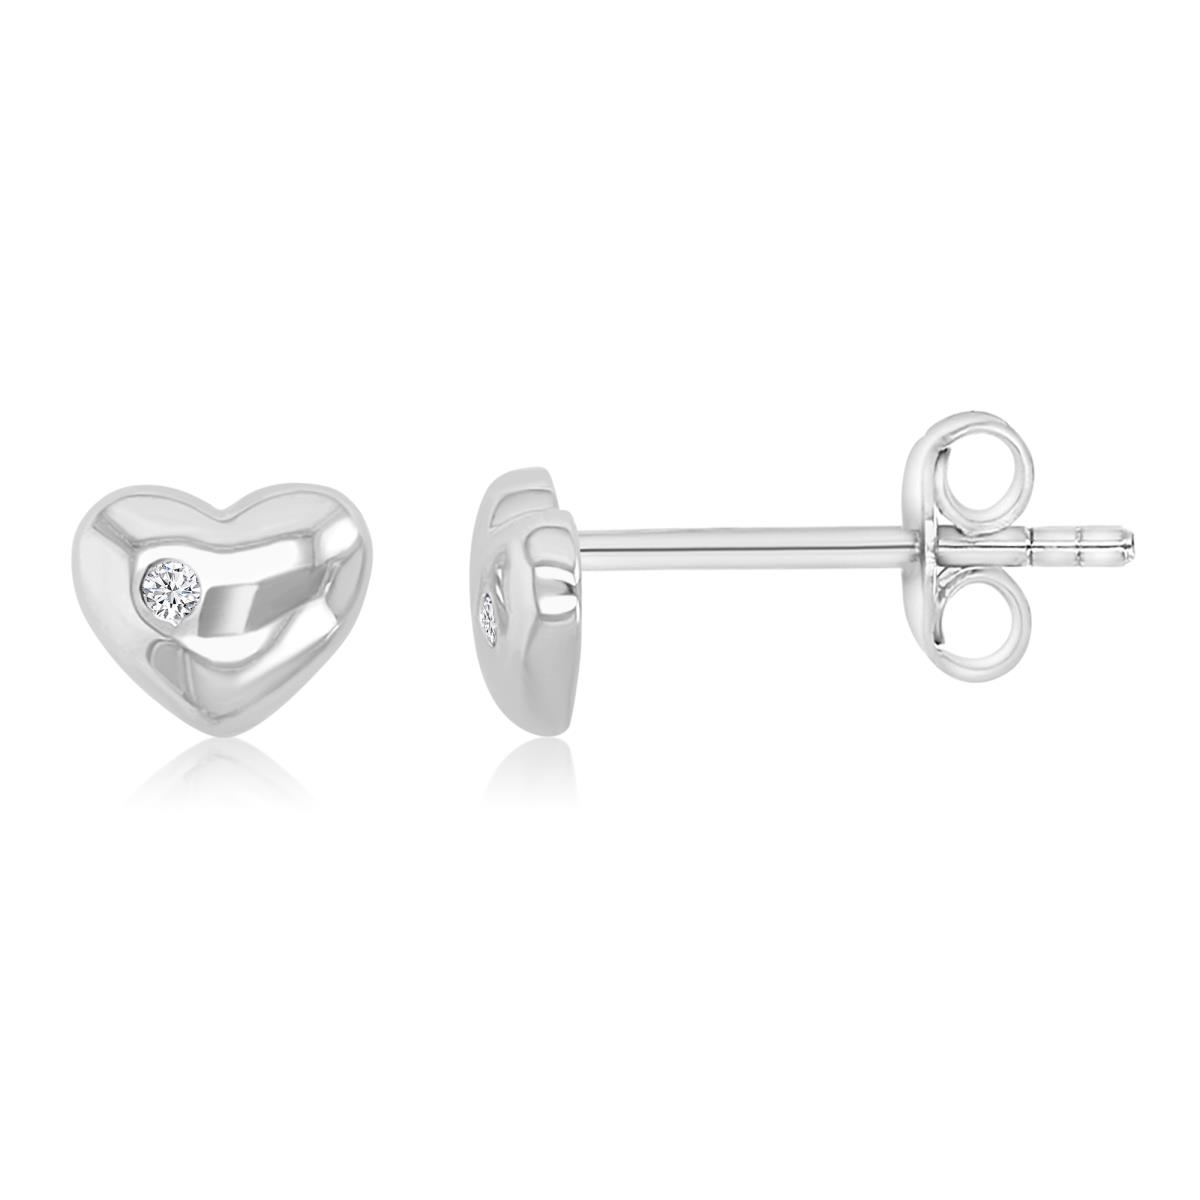 Brass White 5mm White CZ Romantic Heart Stud Earrings